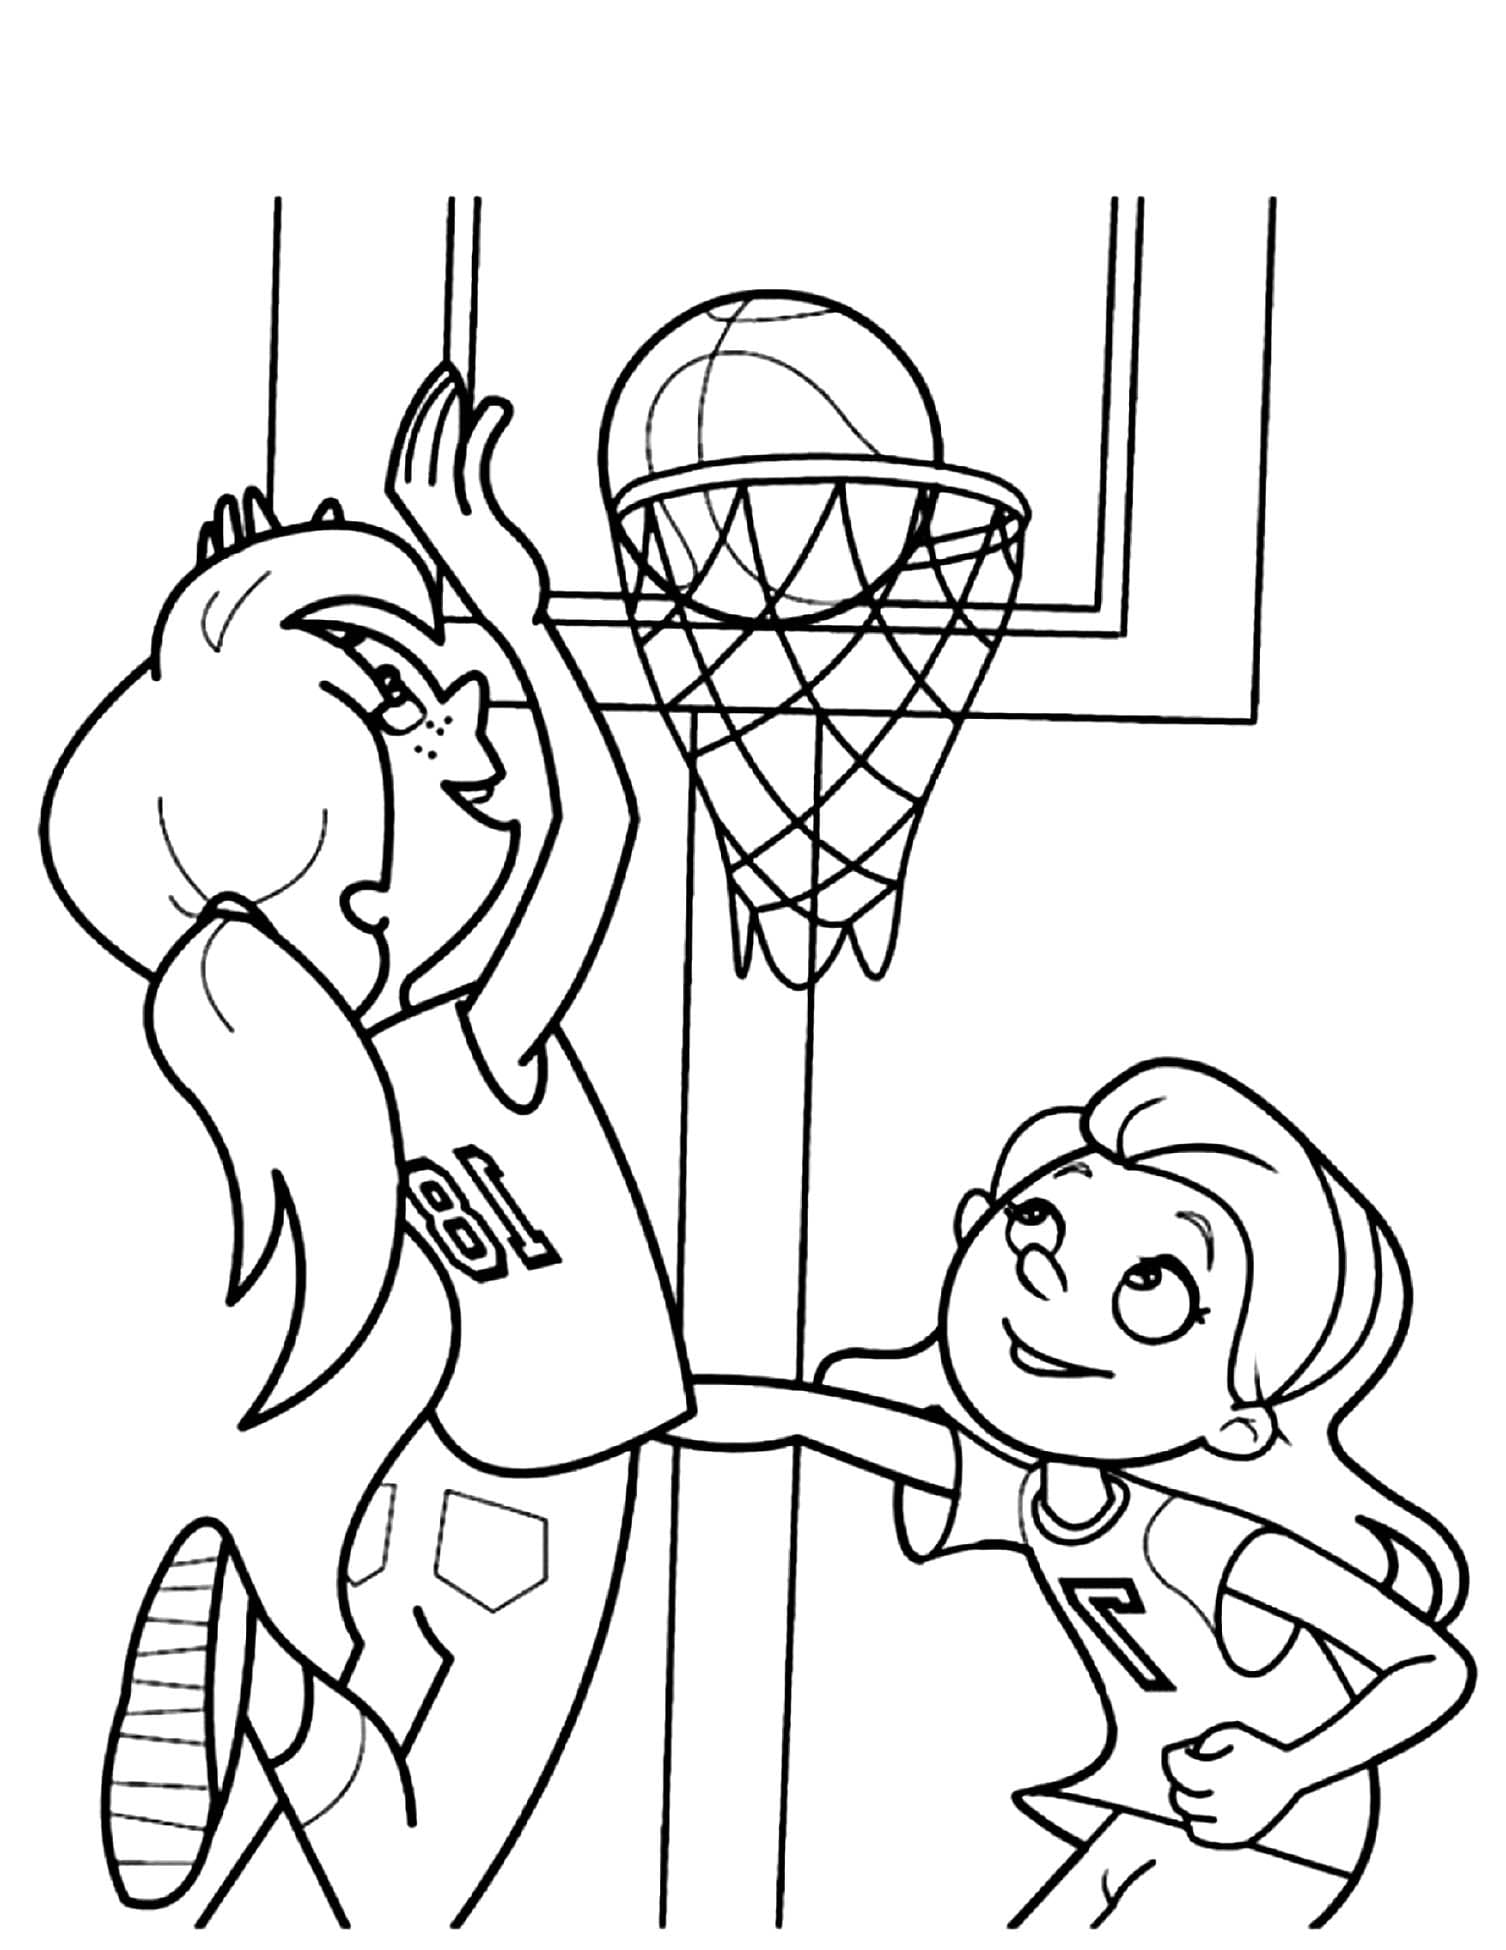 Basketball For Children